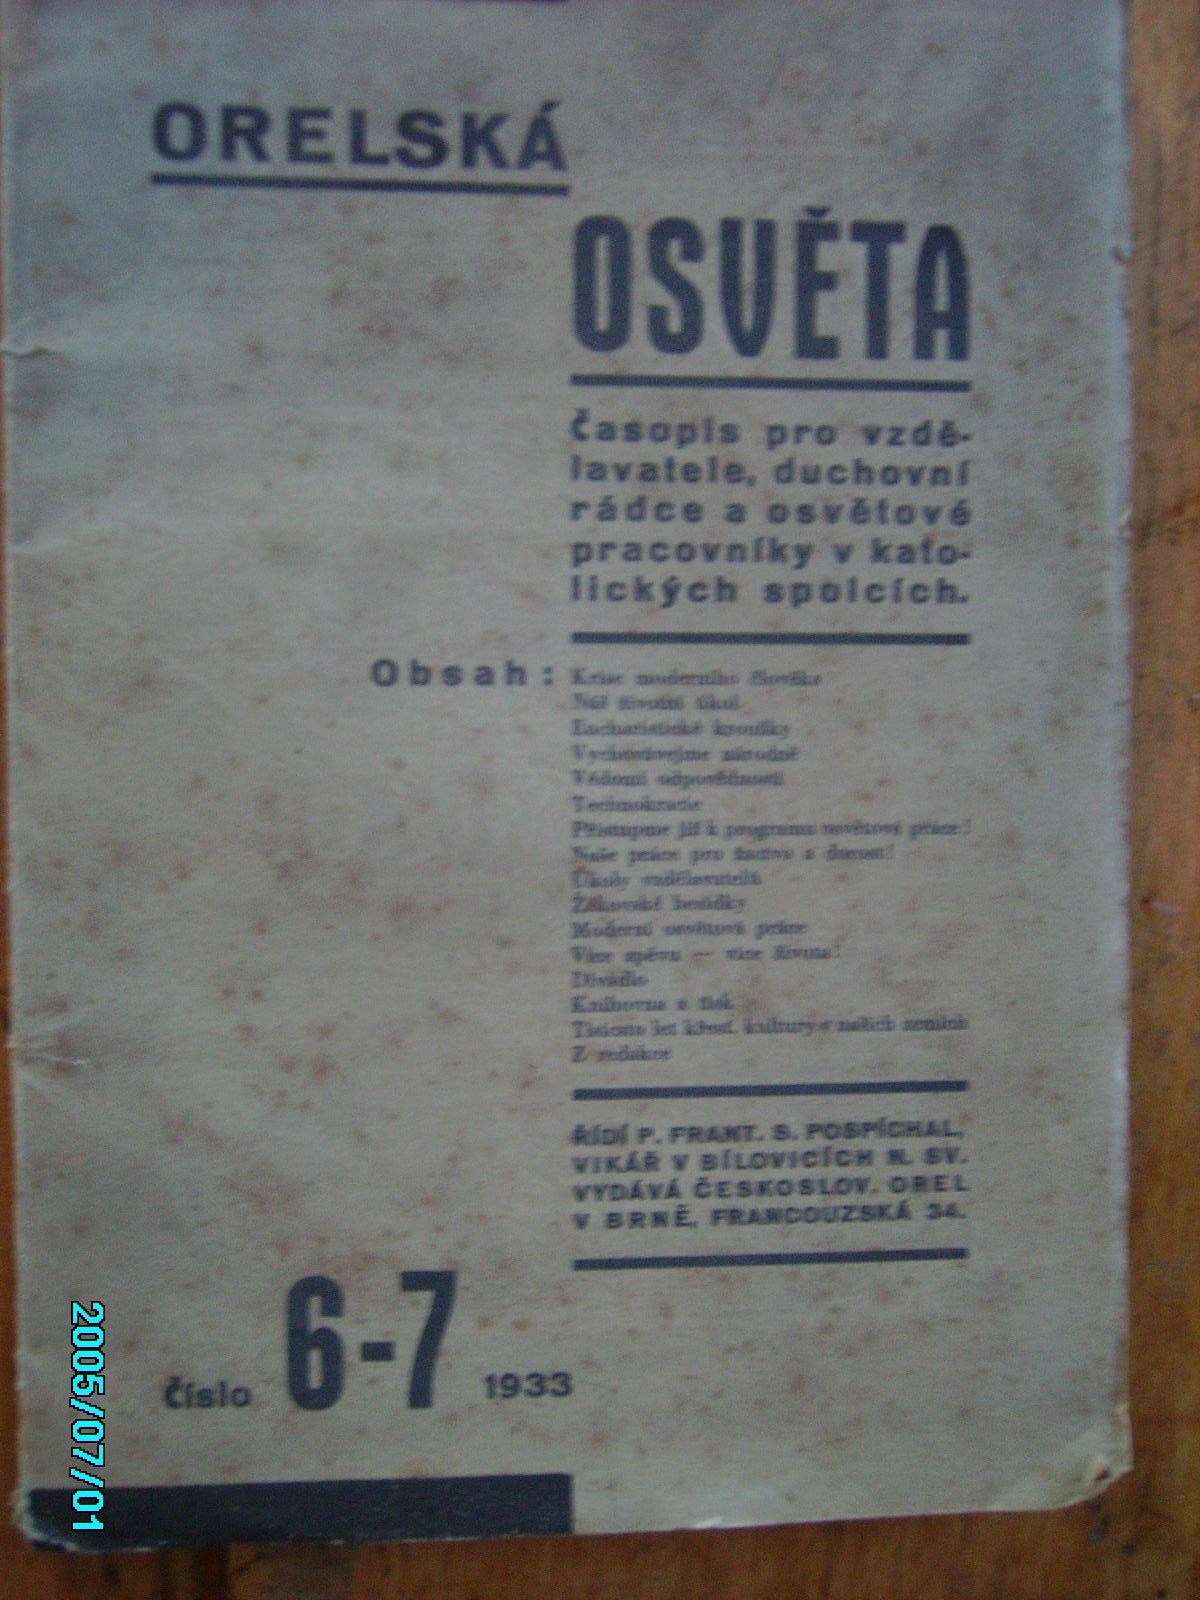 zobrazit detail knihy Orelsk osvta 3-7 1933